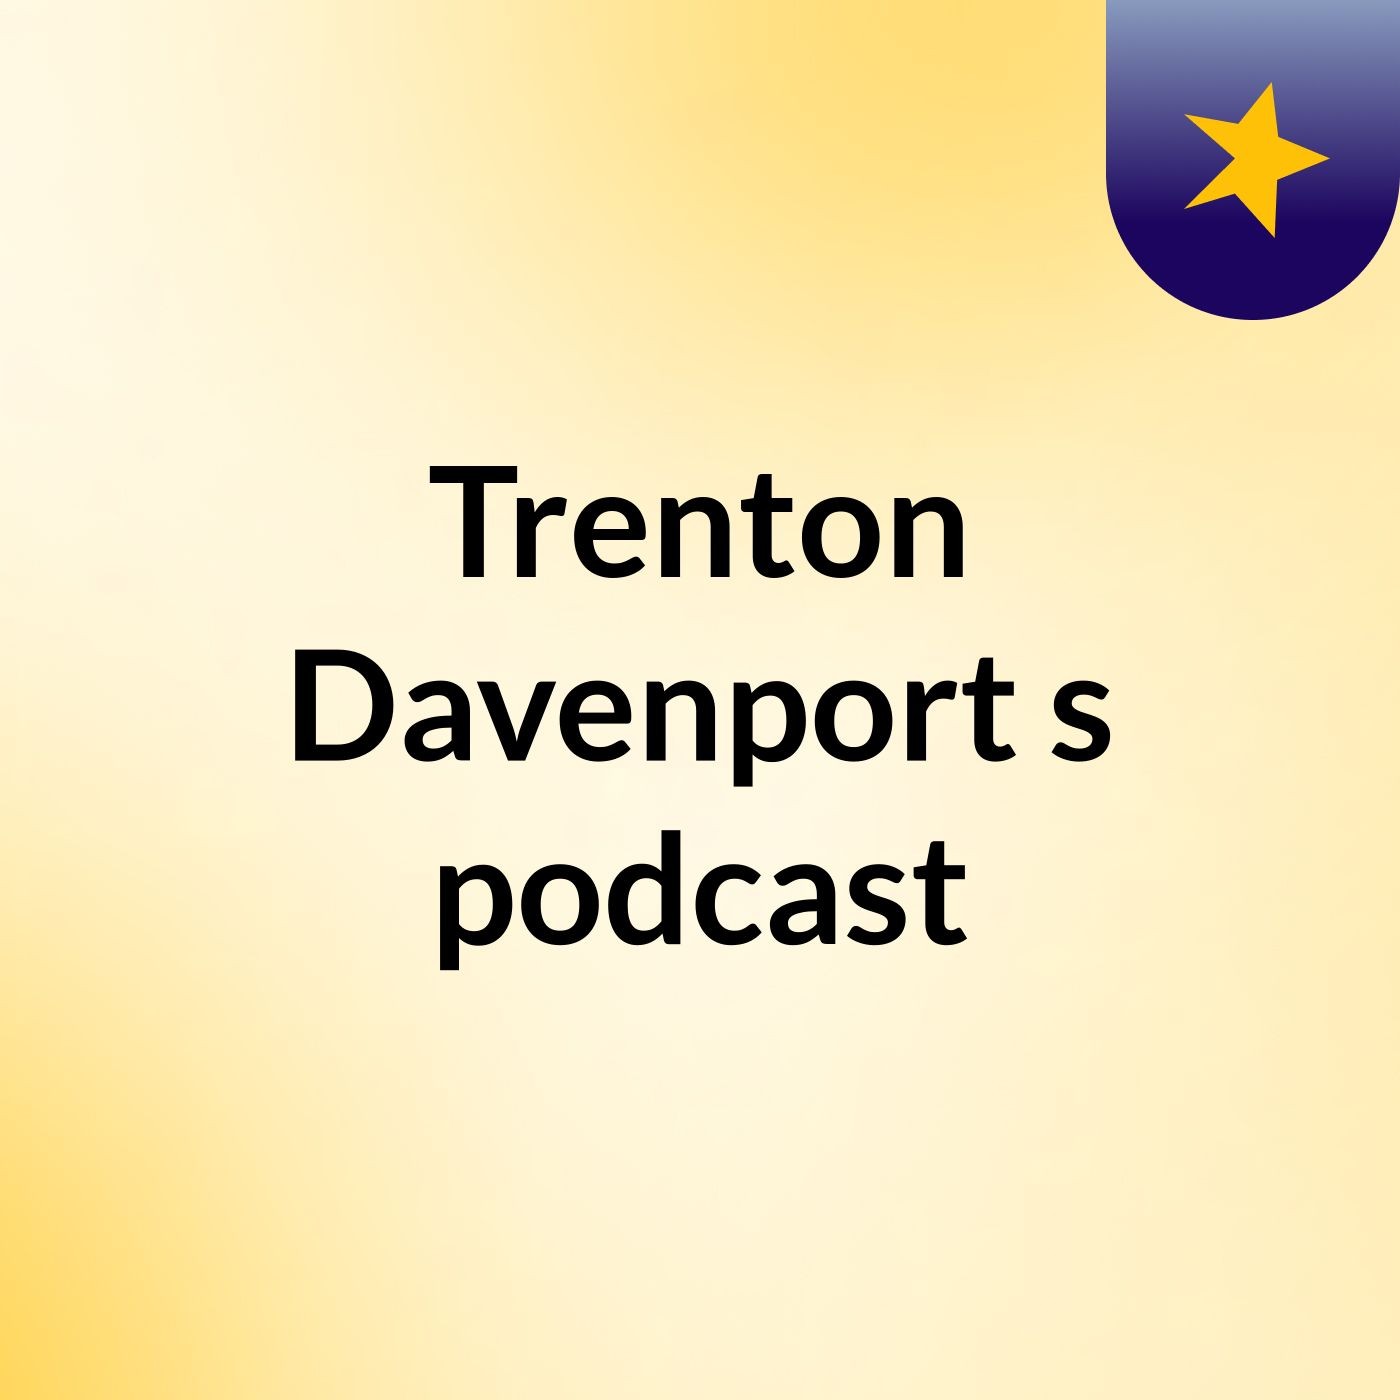 Trenton Davenport's podcast